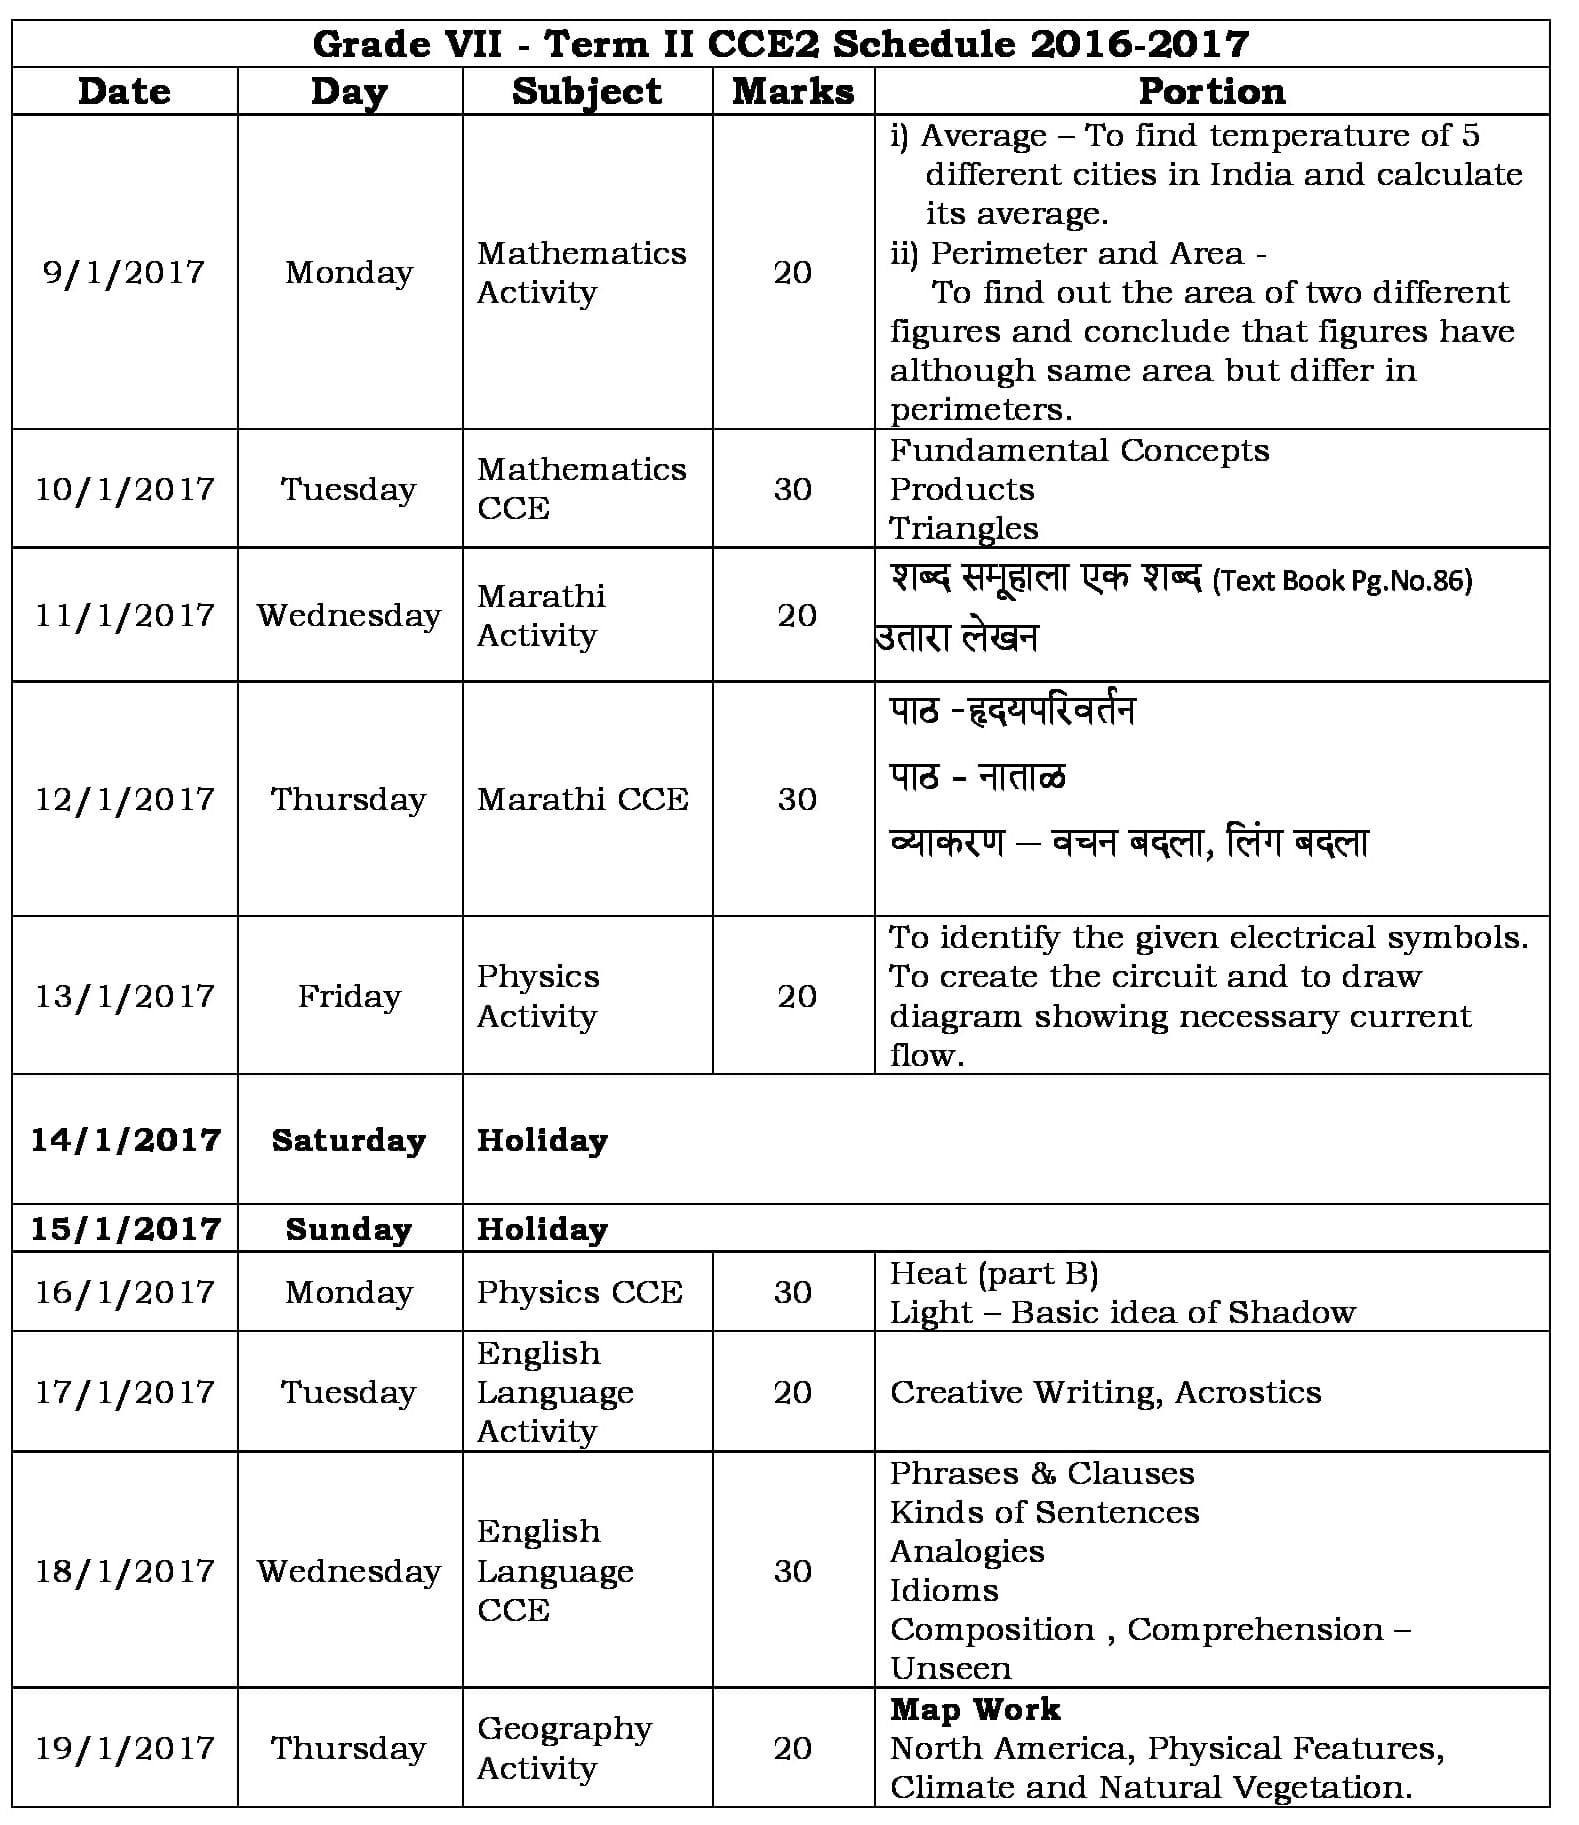 Term II CCE 2 Schedule